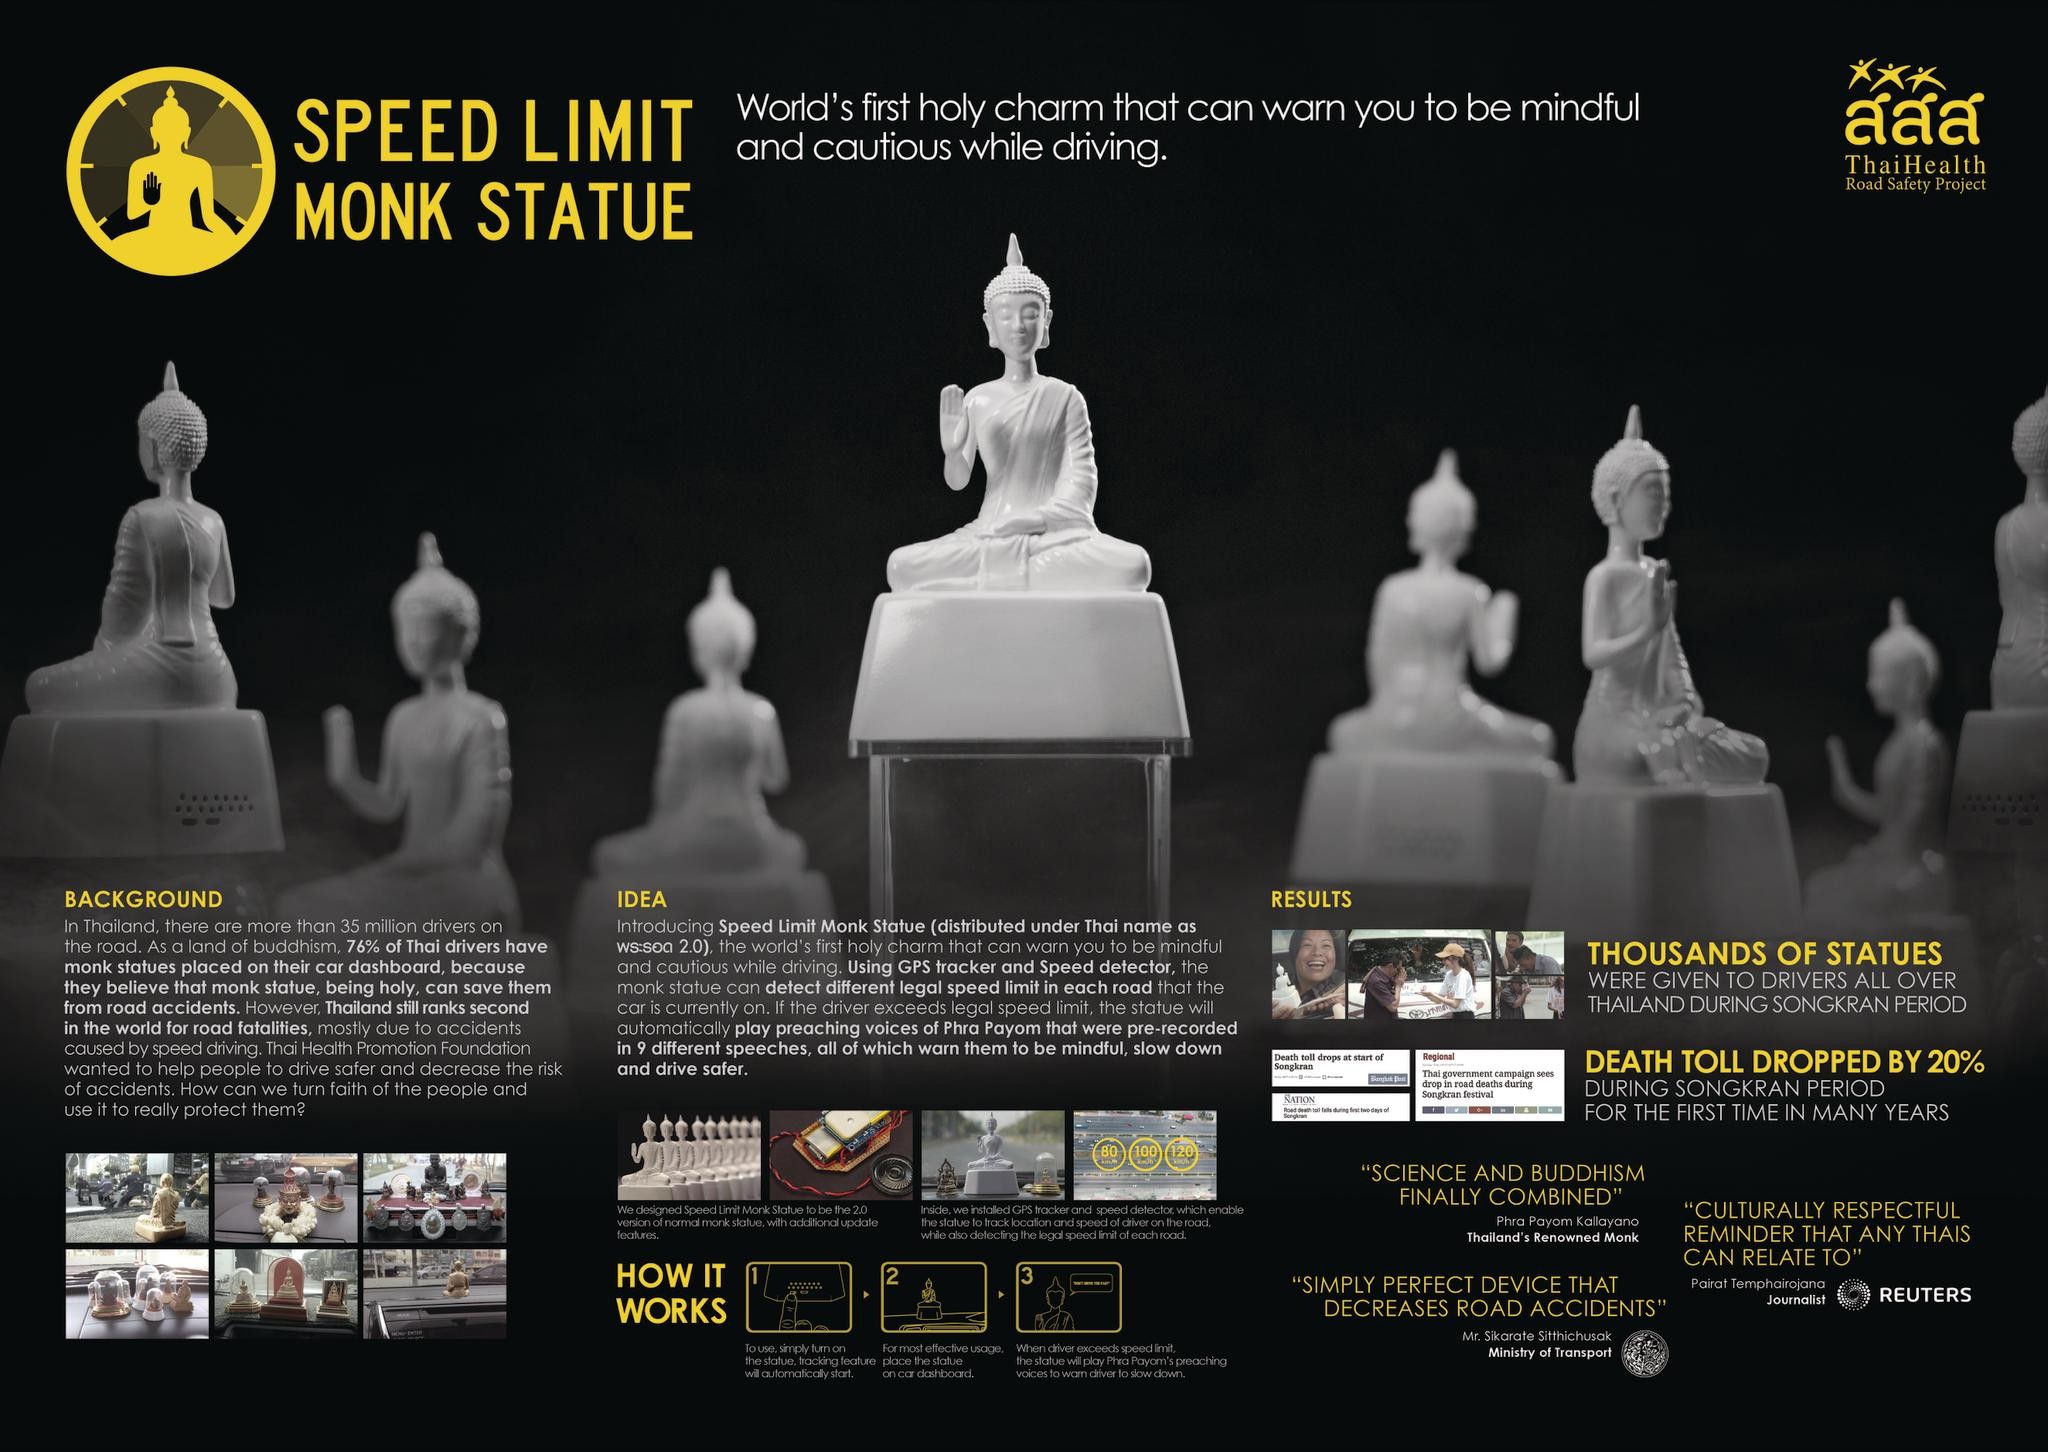 Speed Limit Monk Statue